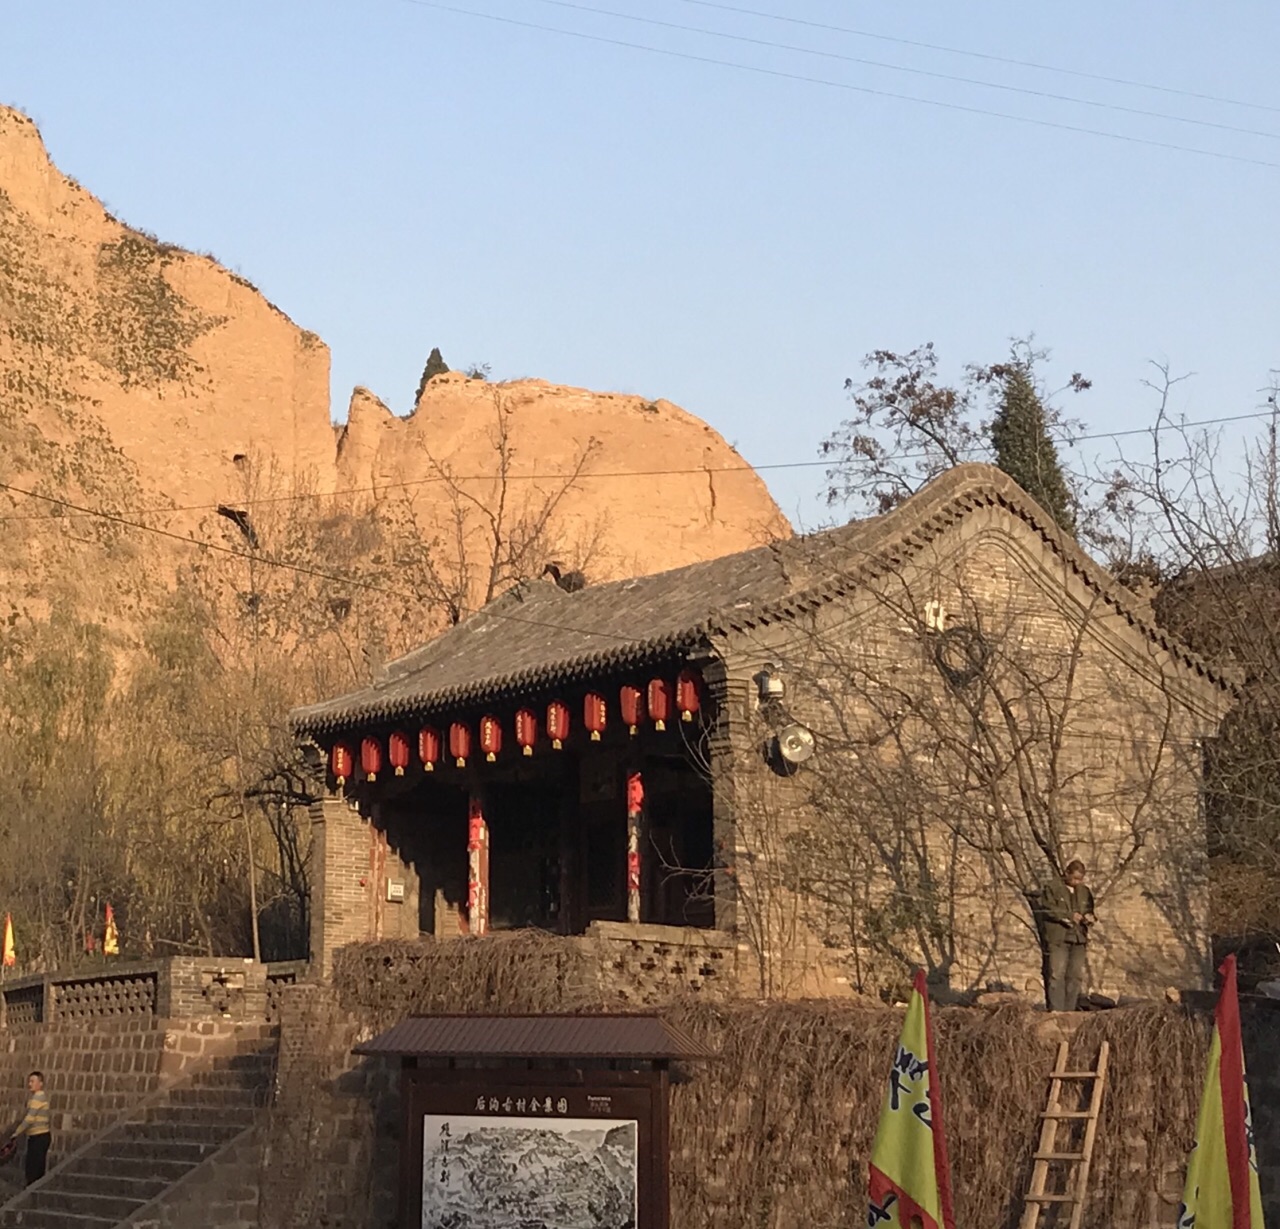 中国有哪些值得一去但鲜为人知的古墓？ - 知乎